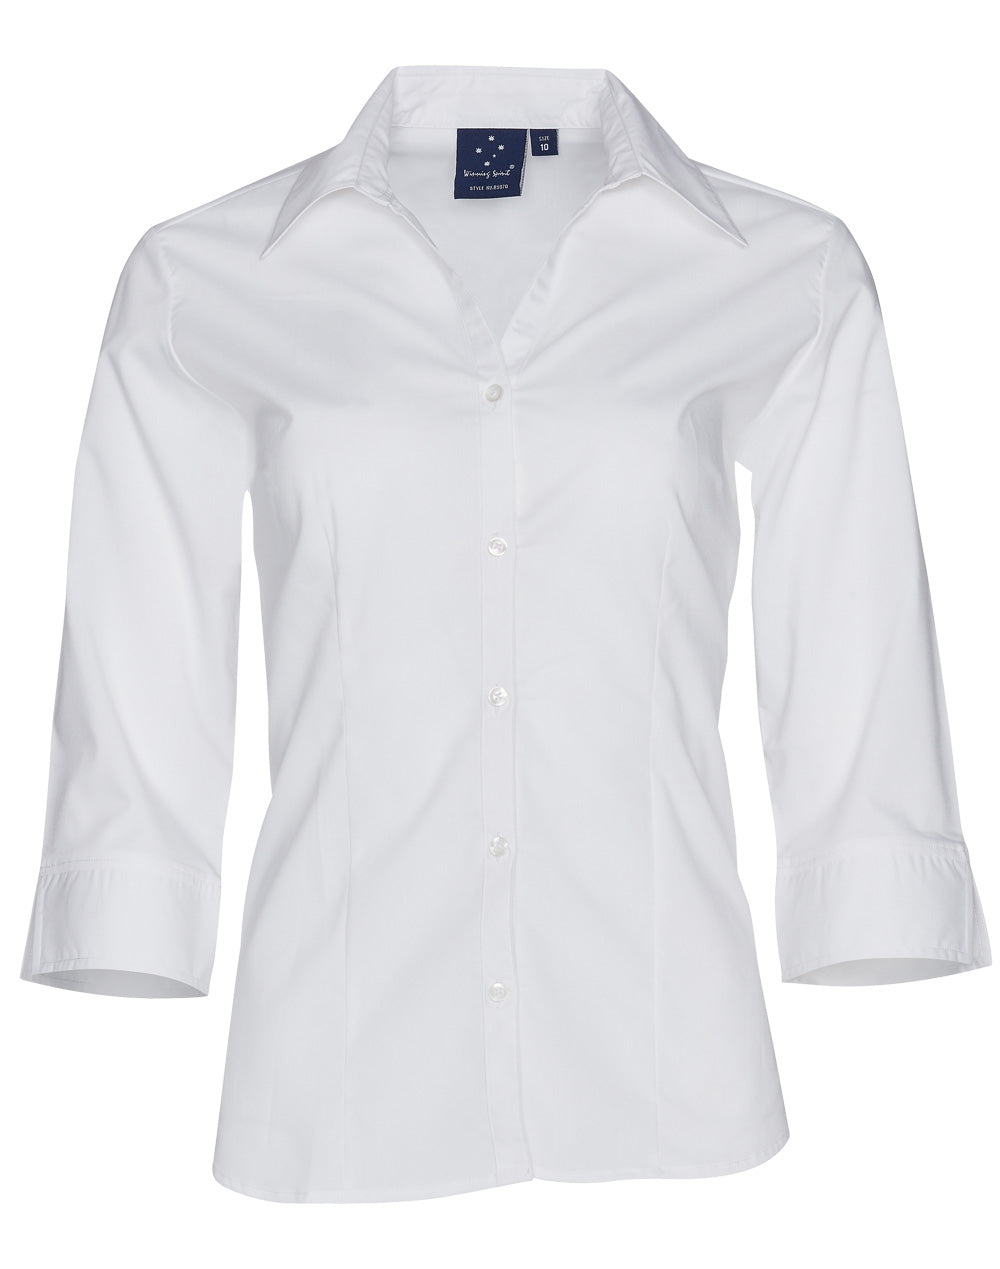 Winning Spirit Women's Teflon Executive 3/4 Sleeve Shirt (BS07Q)